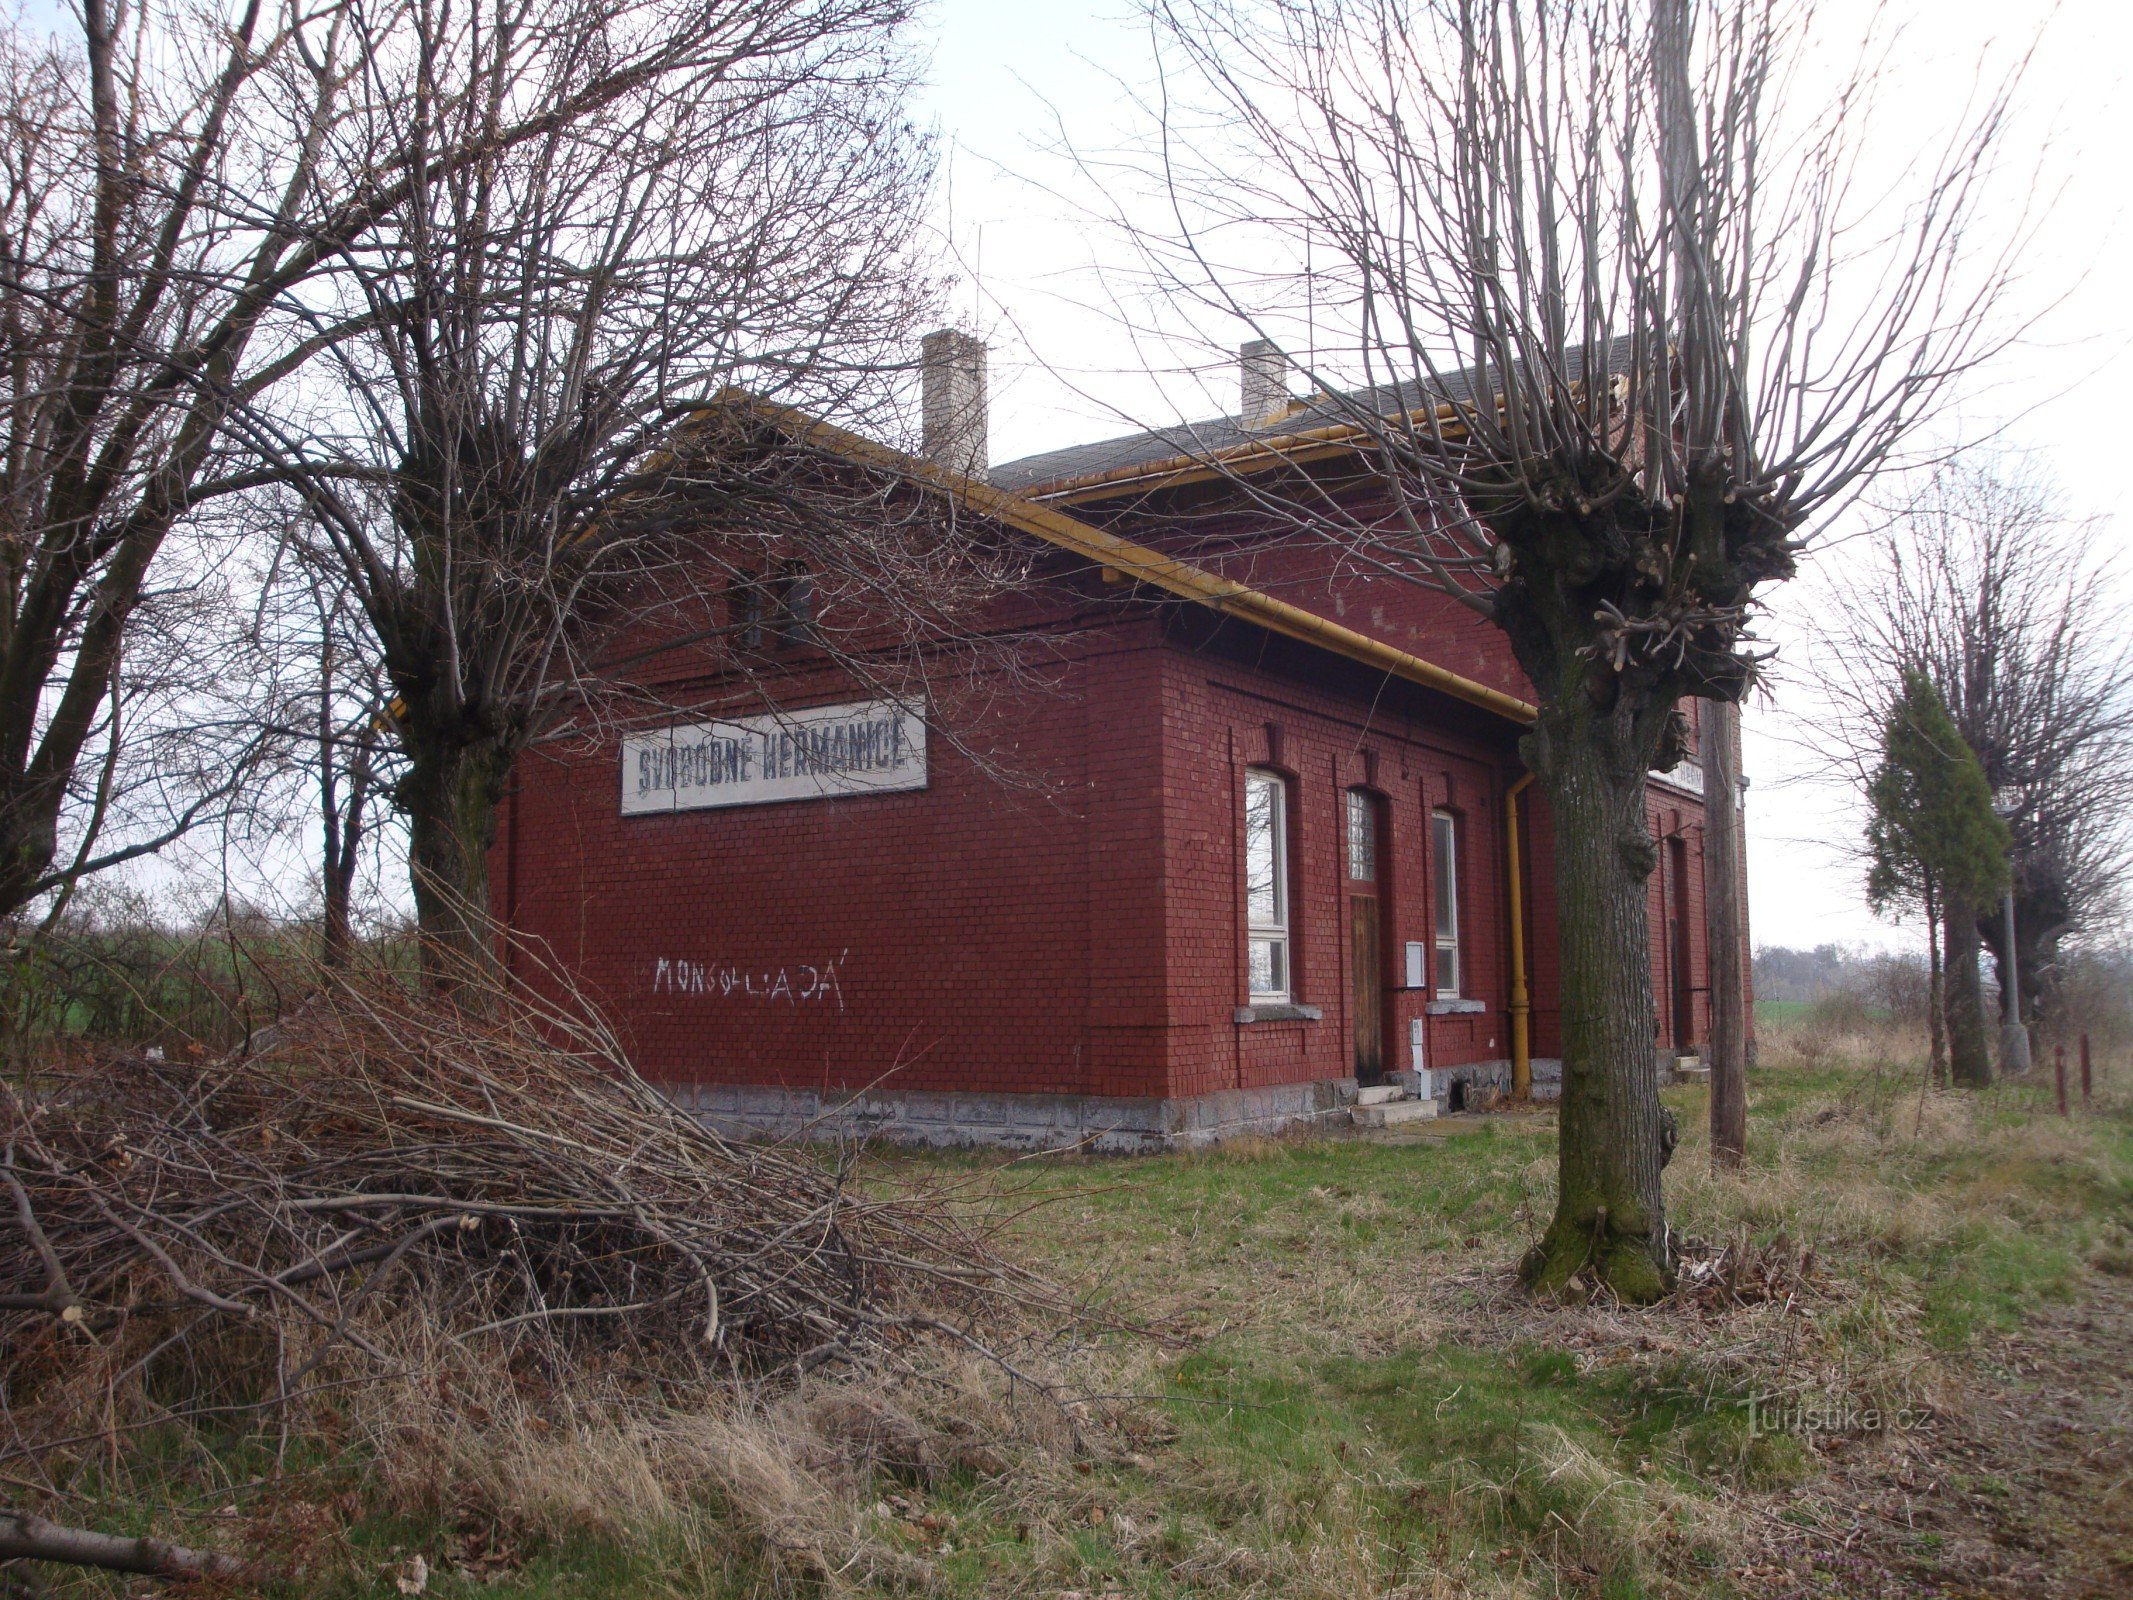 Ancien bâtiment de la gare, vue depuis les voies